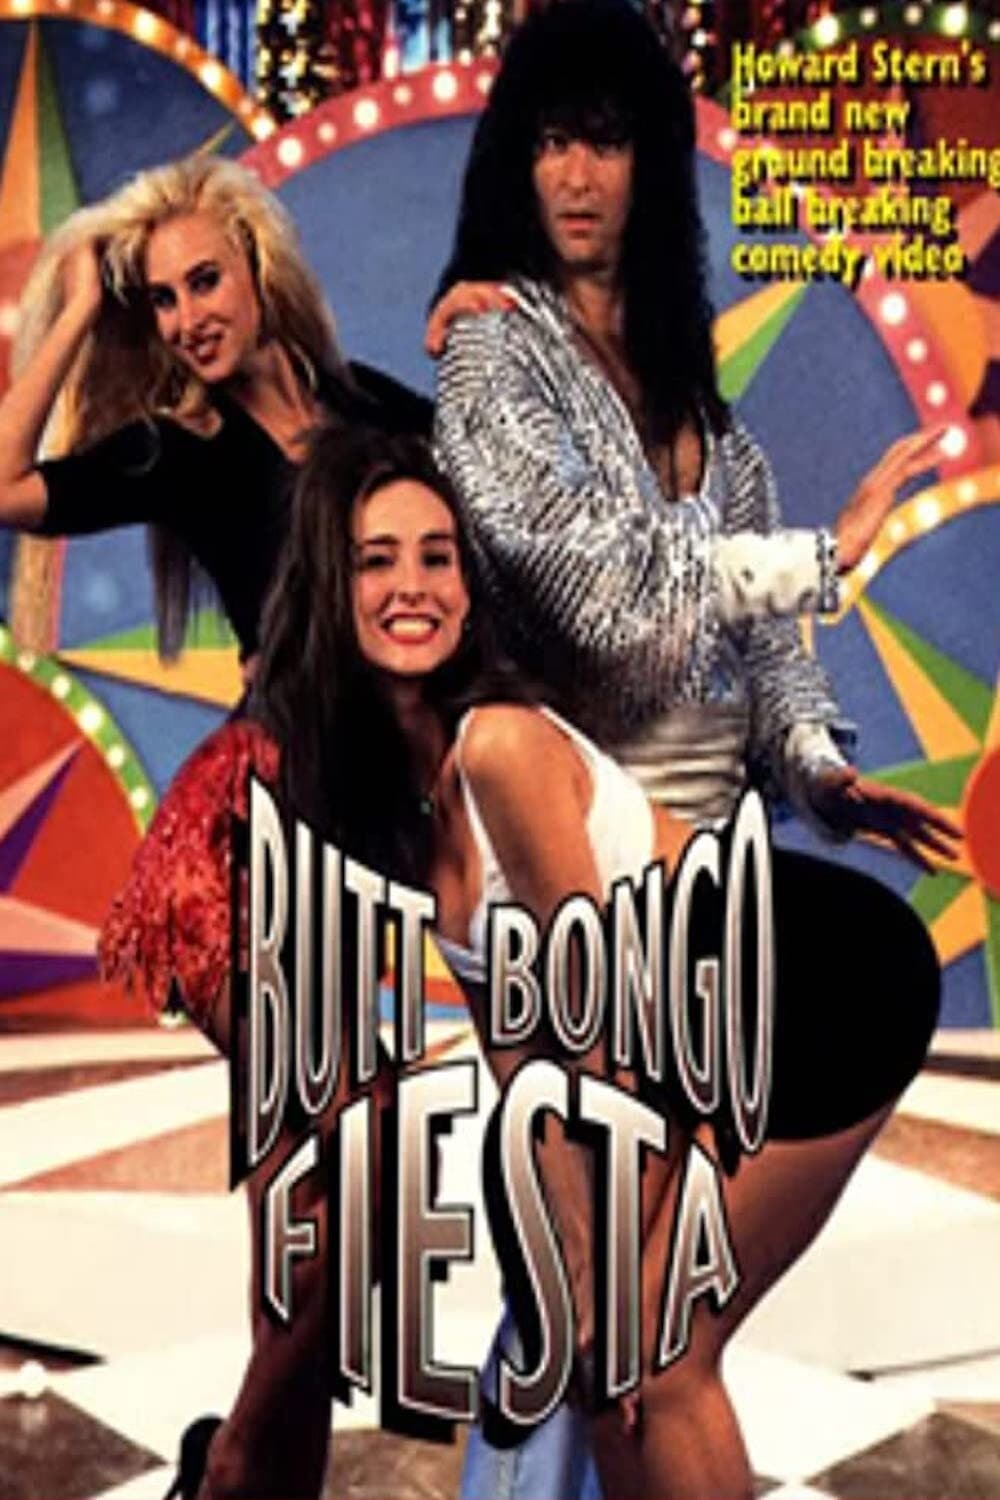 Howard Stern's Butt Bongo Fiesta (1992)